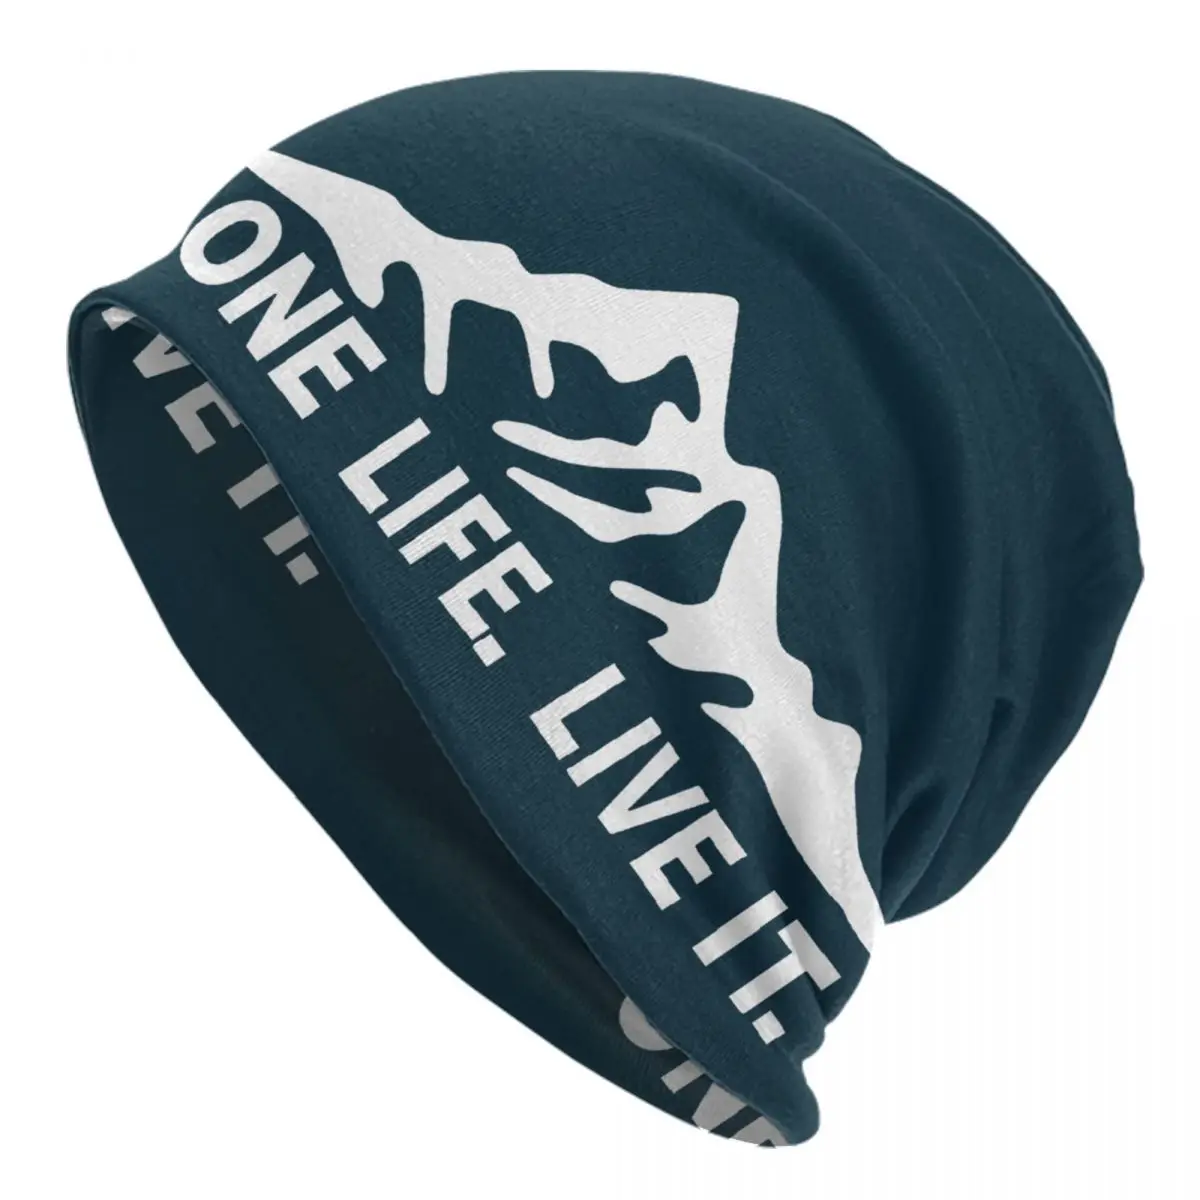 

Шапки-бини One Life Live It, шапки унисекс, зимняя теплая вязаная шапка для мужчин и женщин, шапки для взрослых в стиле хип-хоп, лыжная шапка для активного отдыха